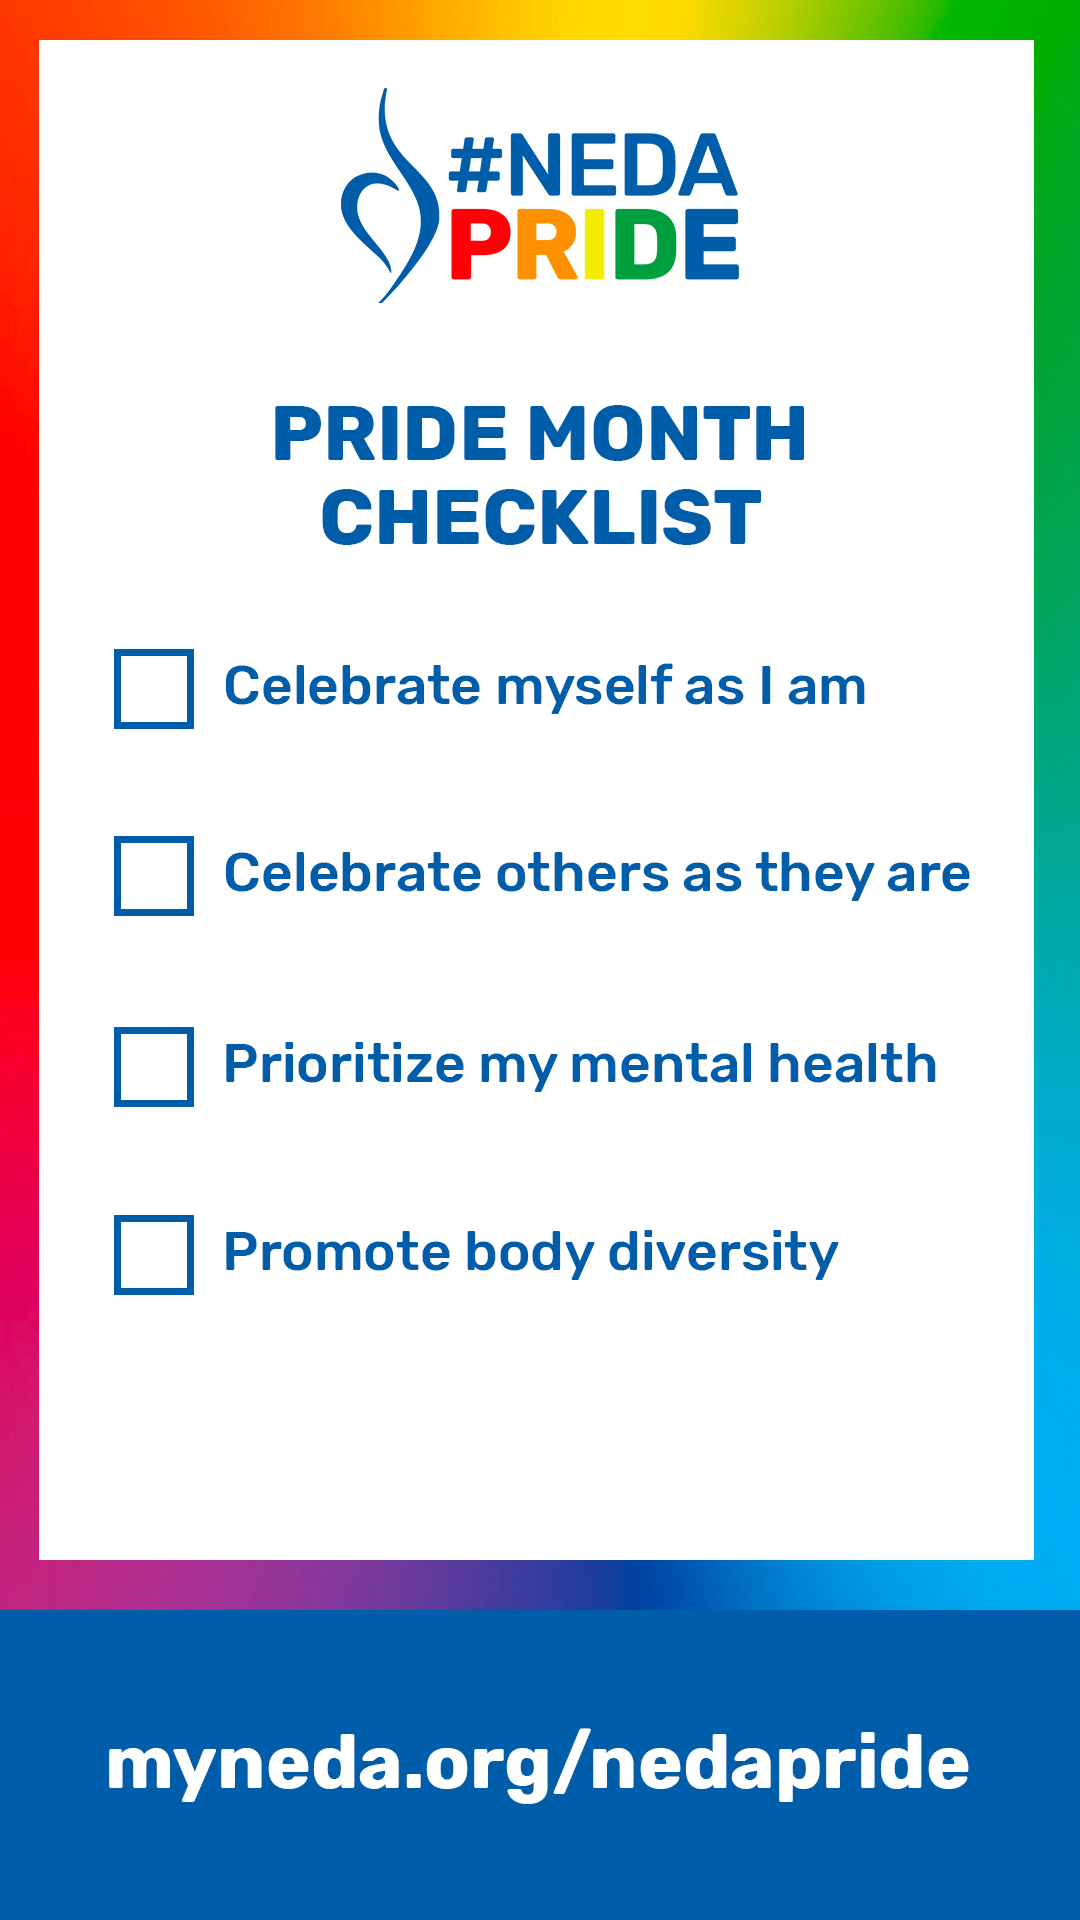 NEDA Pride checklist story